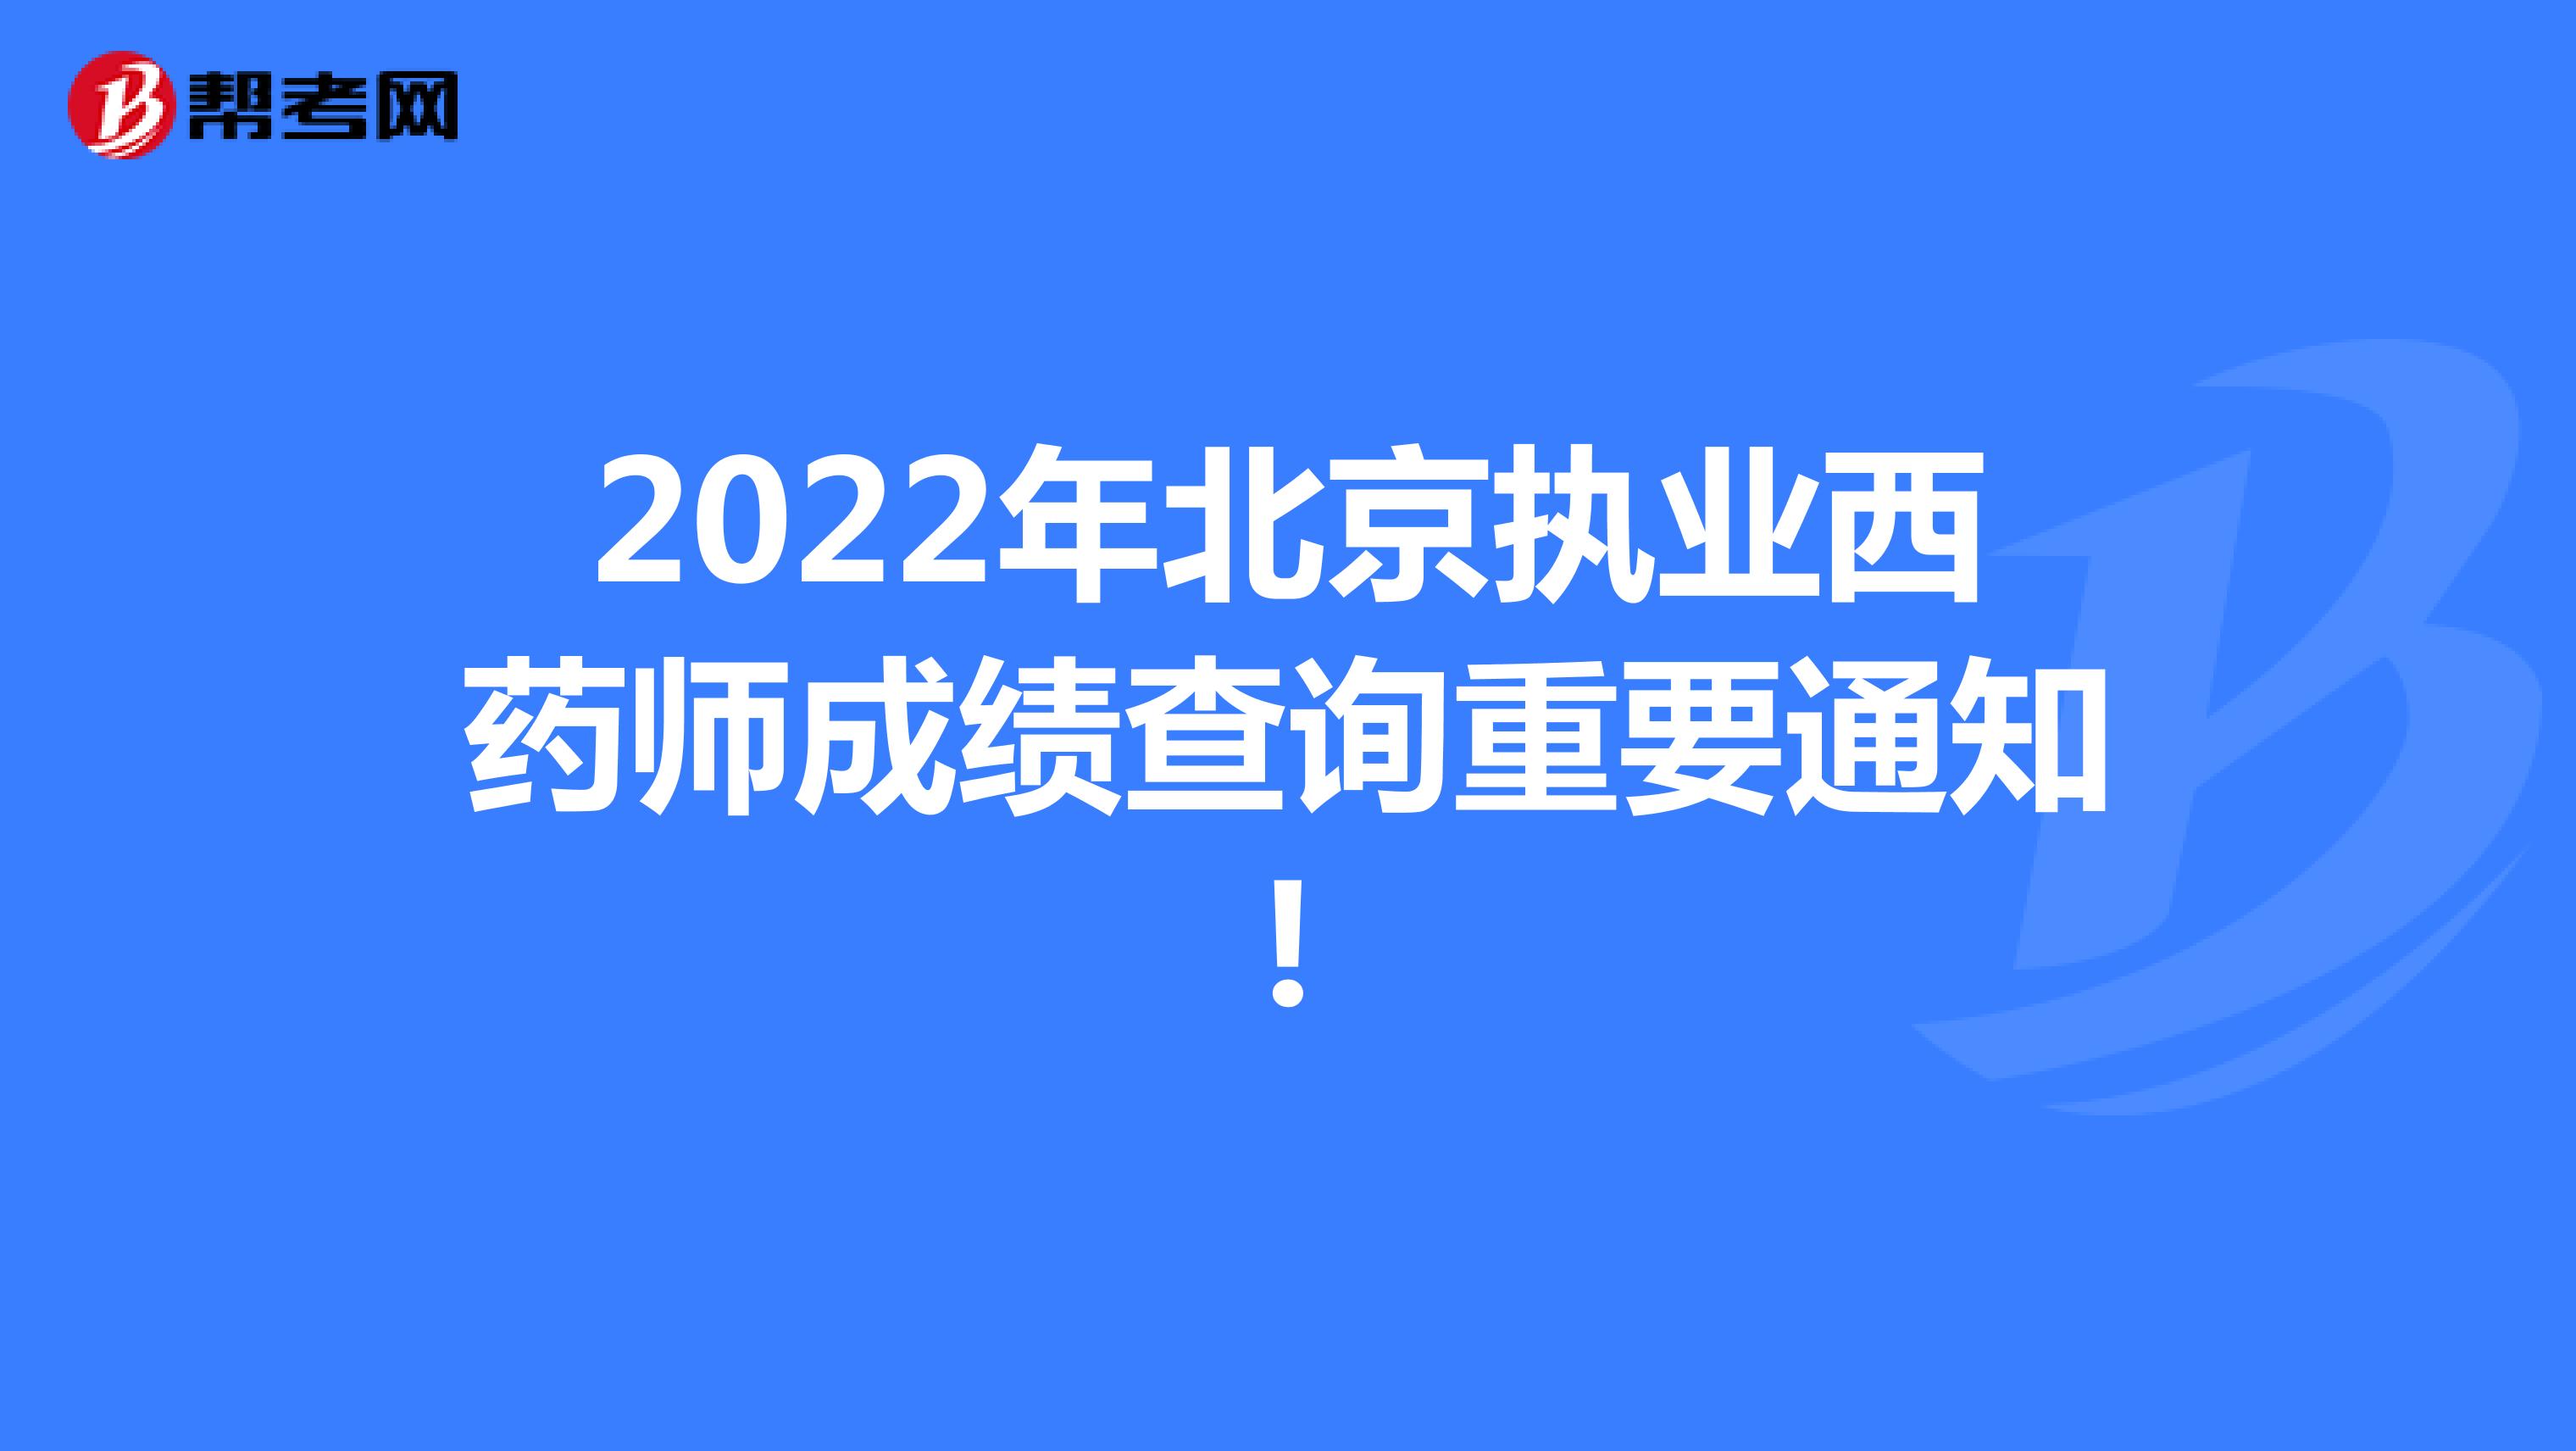 2022年北京执业西药师成绩查询重要通知!